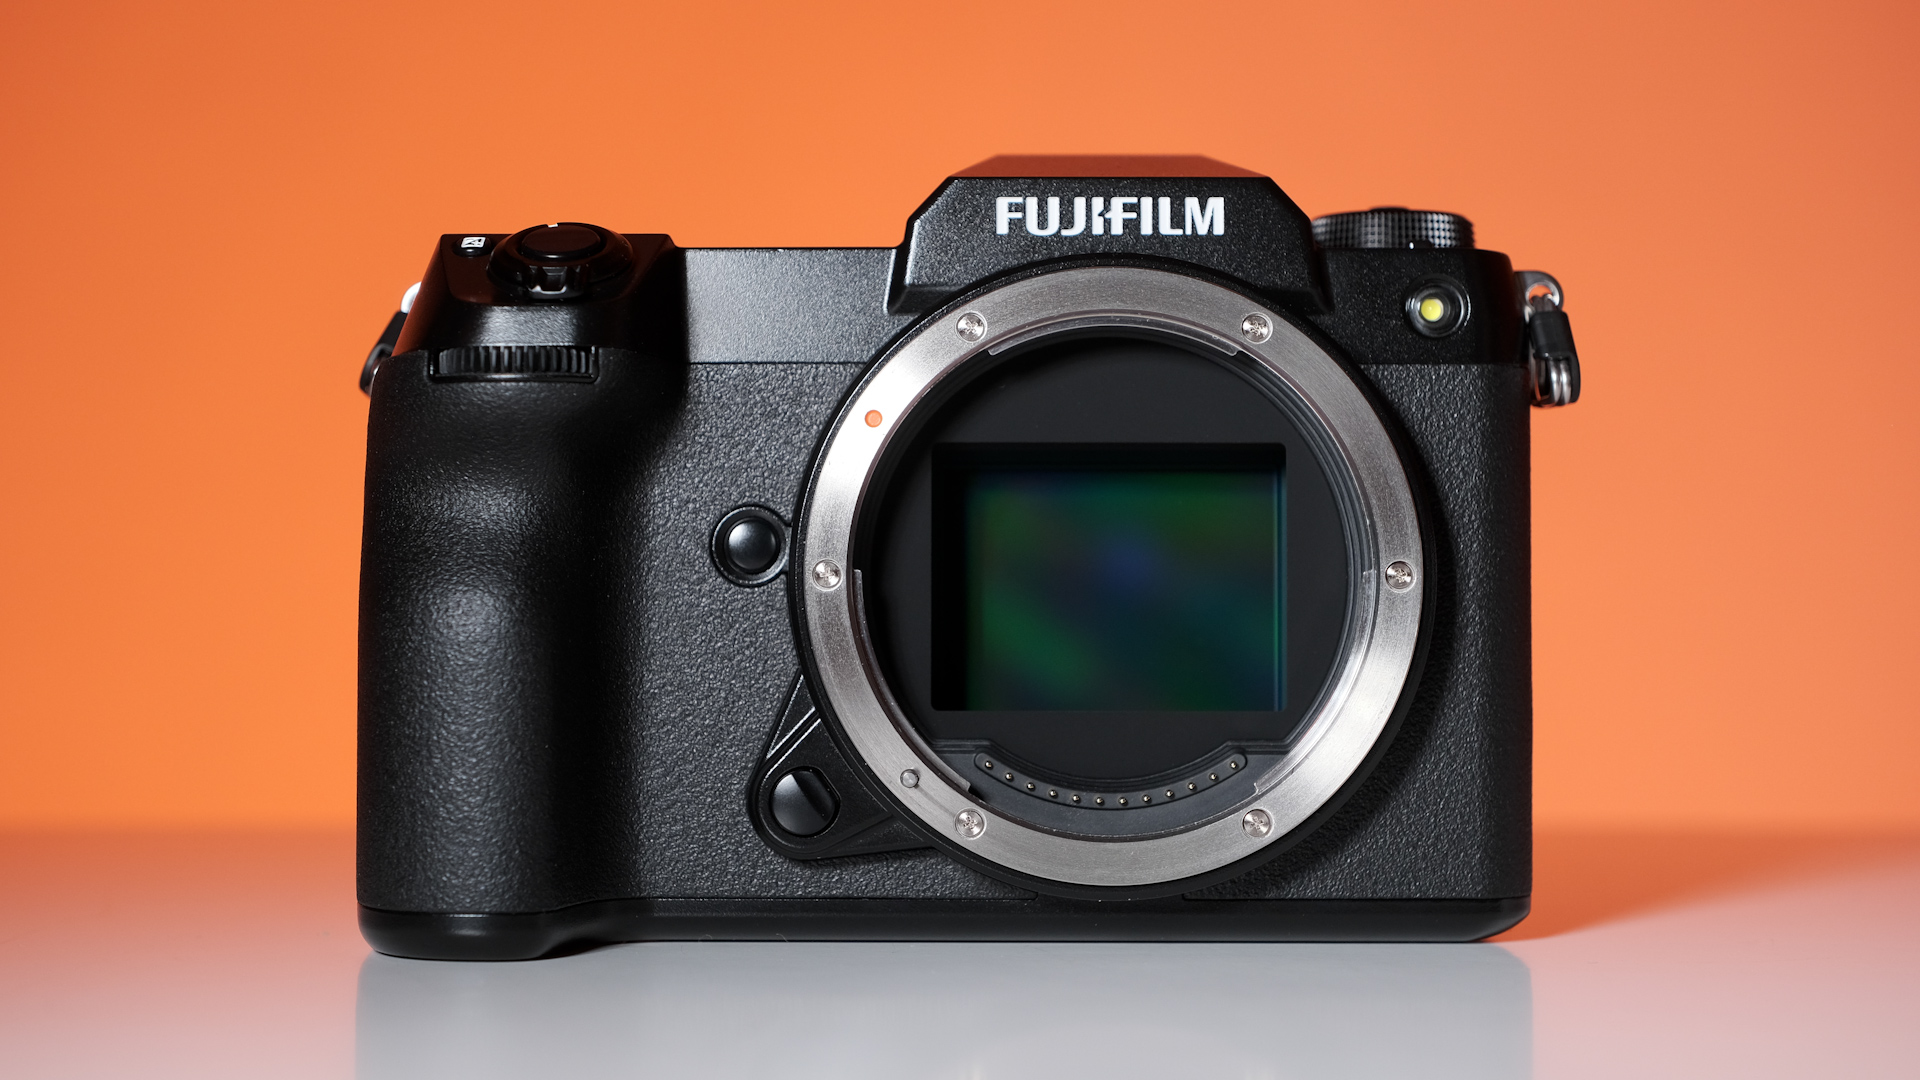 Los teléfonos Xiaomi podrían tener cámara profesional Canon, Nikon o  Hasselblad